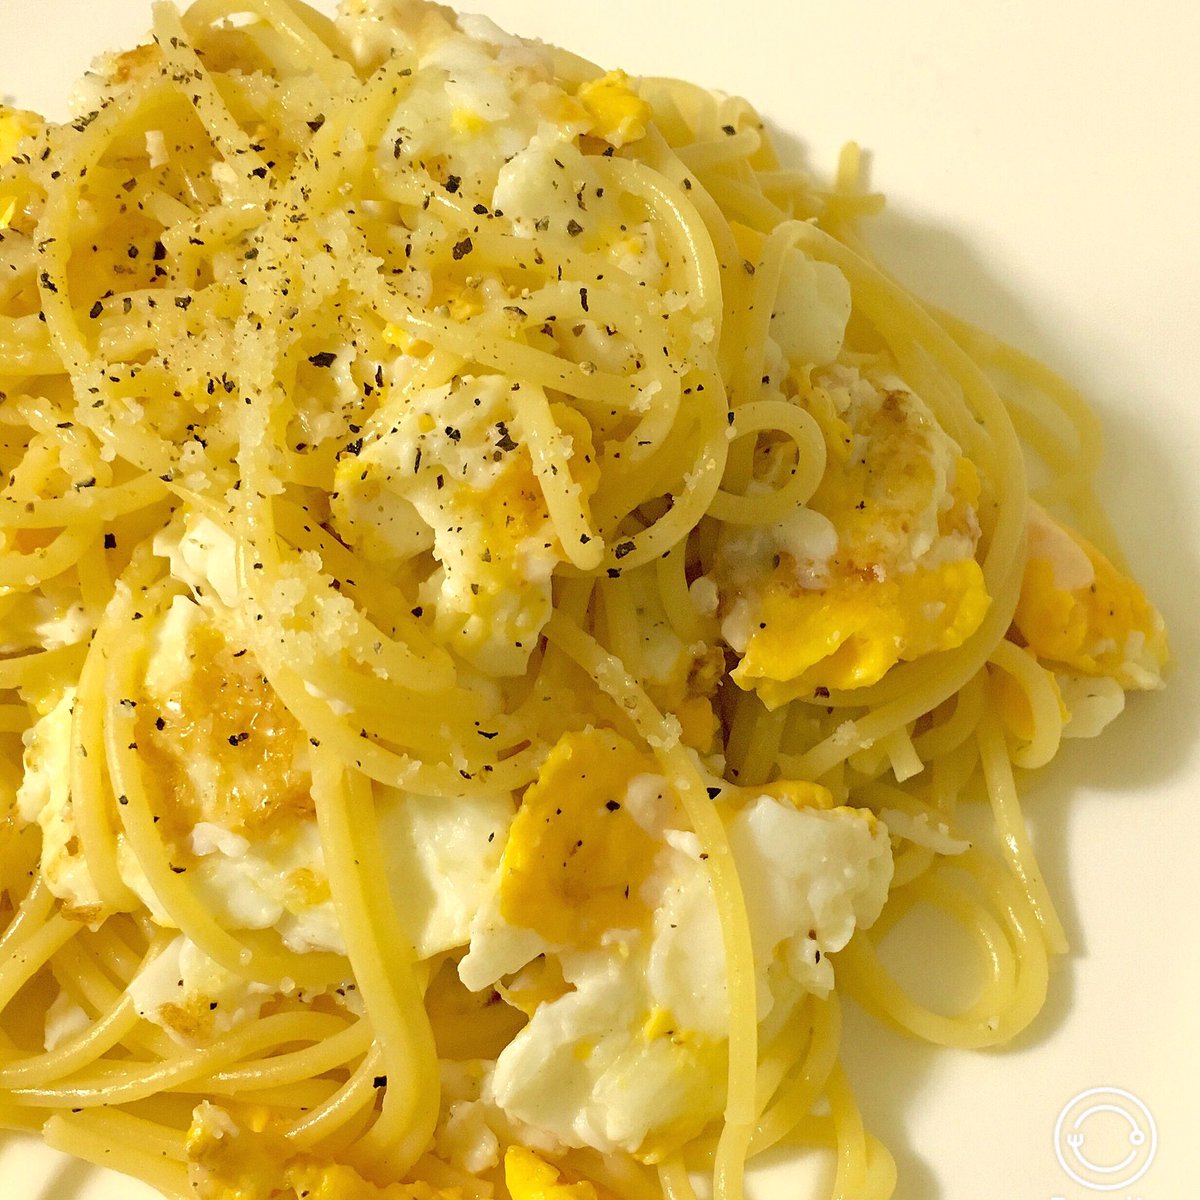 望月淳一 En Twitter 昨晩のまかない Spaghetti Del Poverello スパゲティ デル ポヴェレッロ 貧乏人の スパゲティと言われてる料理で 主な材料は卵 パルメジャーノ スパゲティーのみのシンプルな構成 でもこれが旨いんだよな T Co